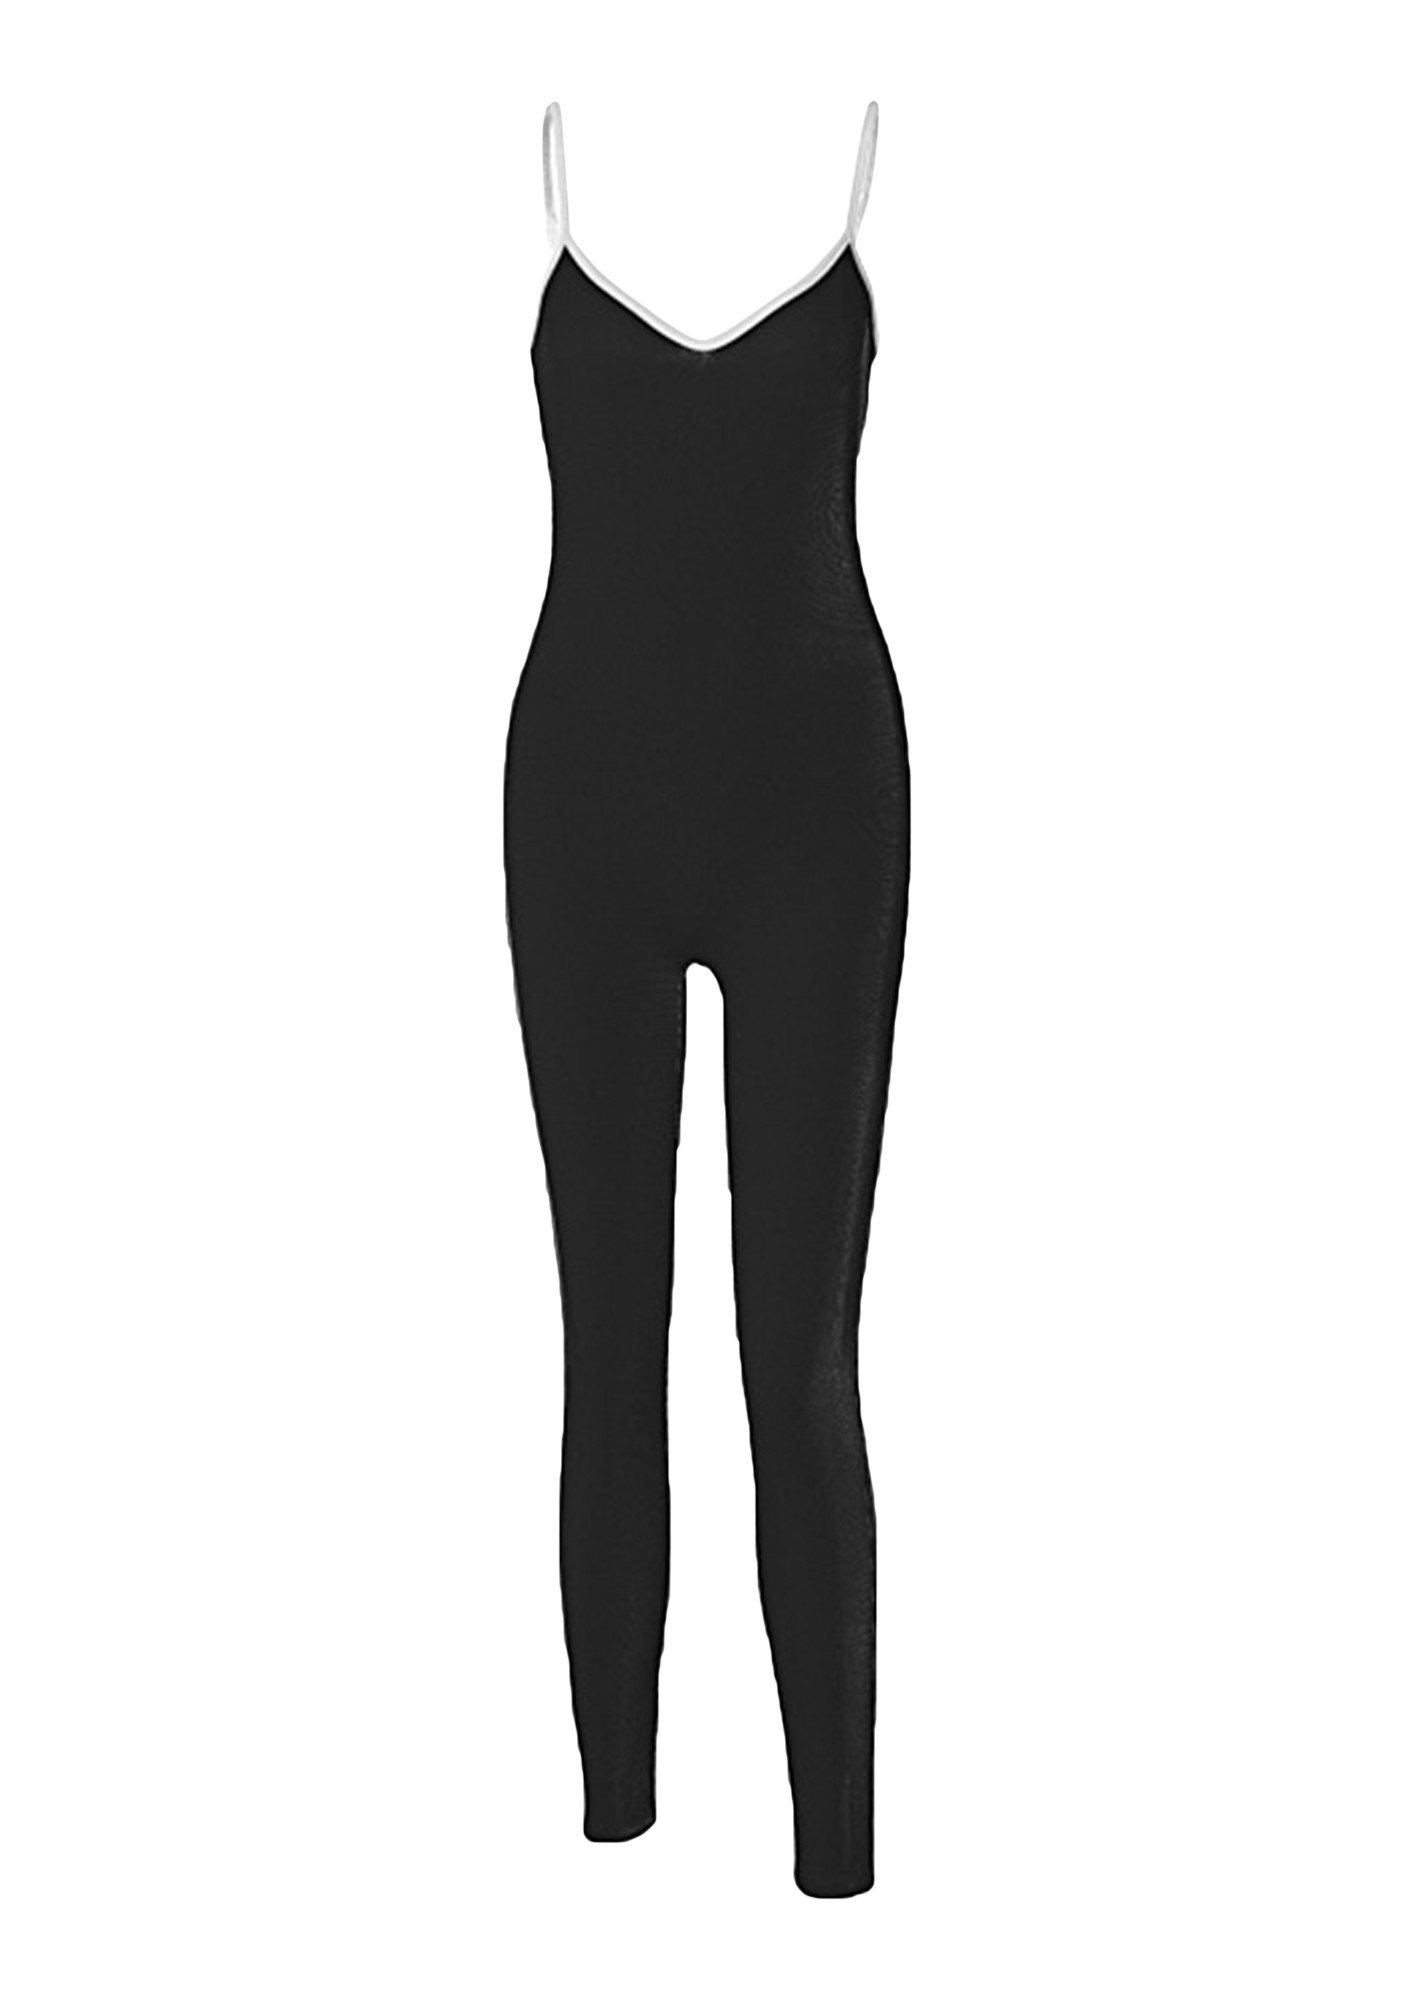 Black Ribbed Jumpsuit - Black Unitard - Catsuit Jumpsuit - Lulus